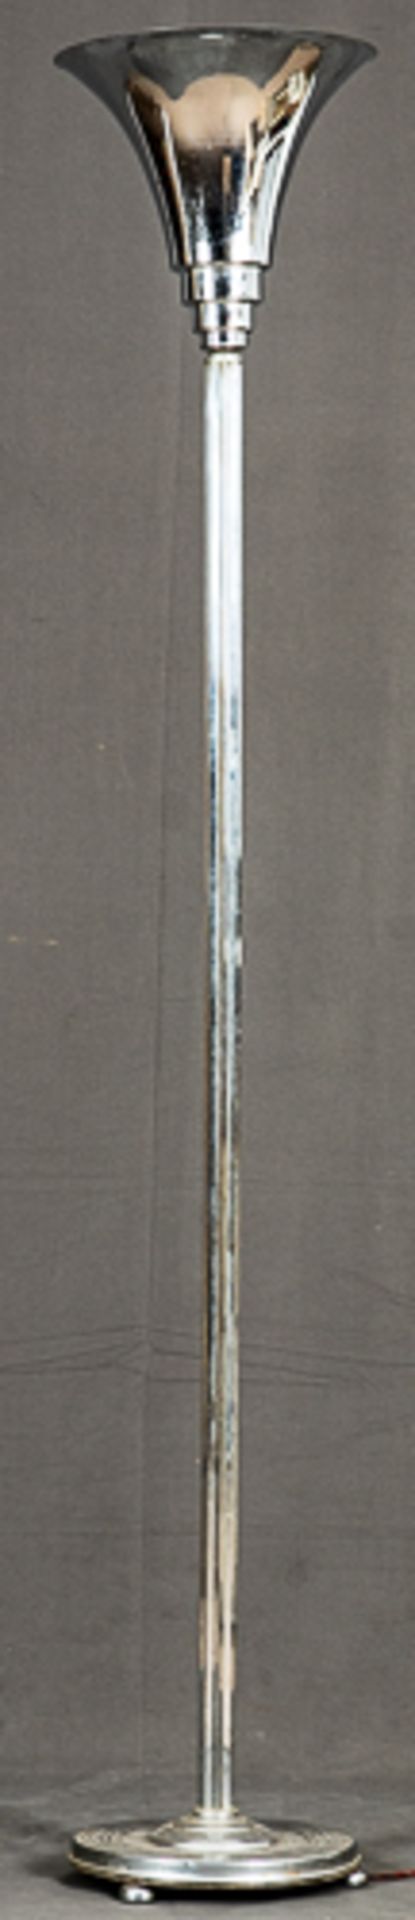 Antike Stehlampe (Deckenfluter), Art-Deco um 1925/30; verchromtes, mehrteiliges Metallgestell; Höhe